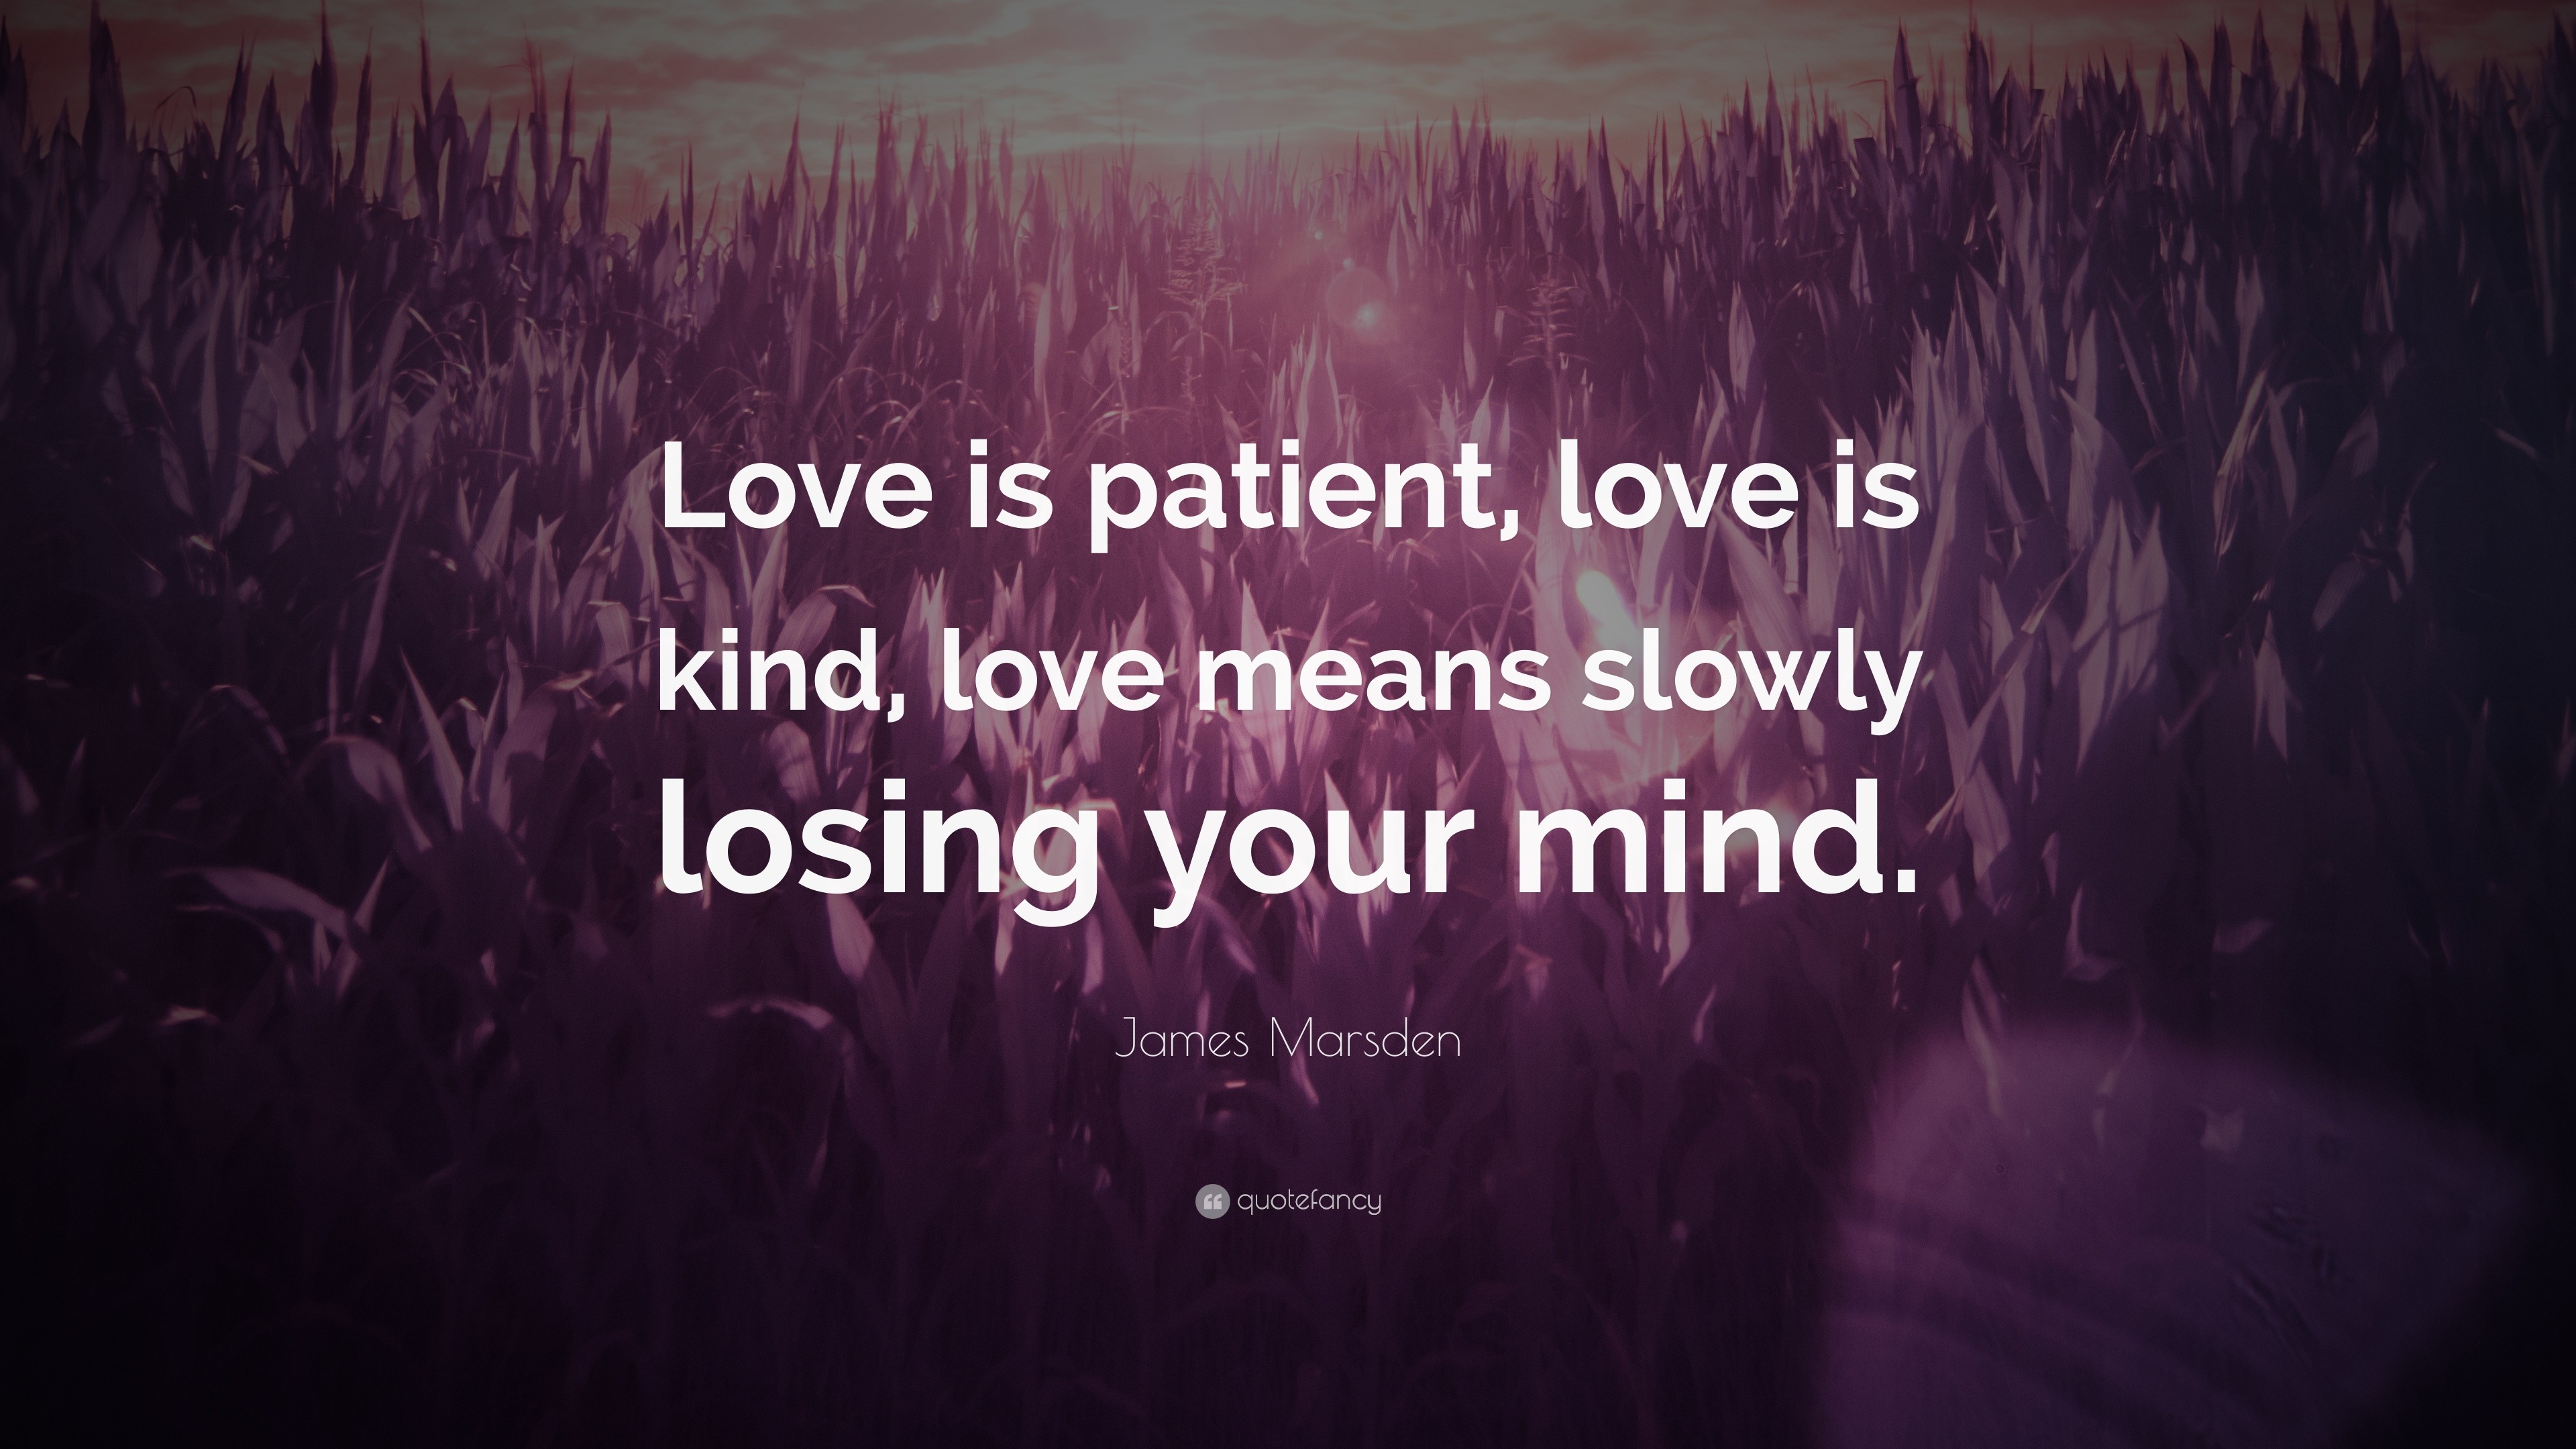 James Marsden Quote “Love is patient, love is kind, love